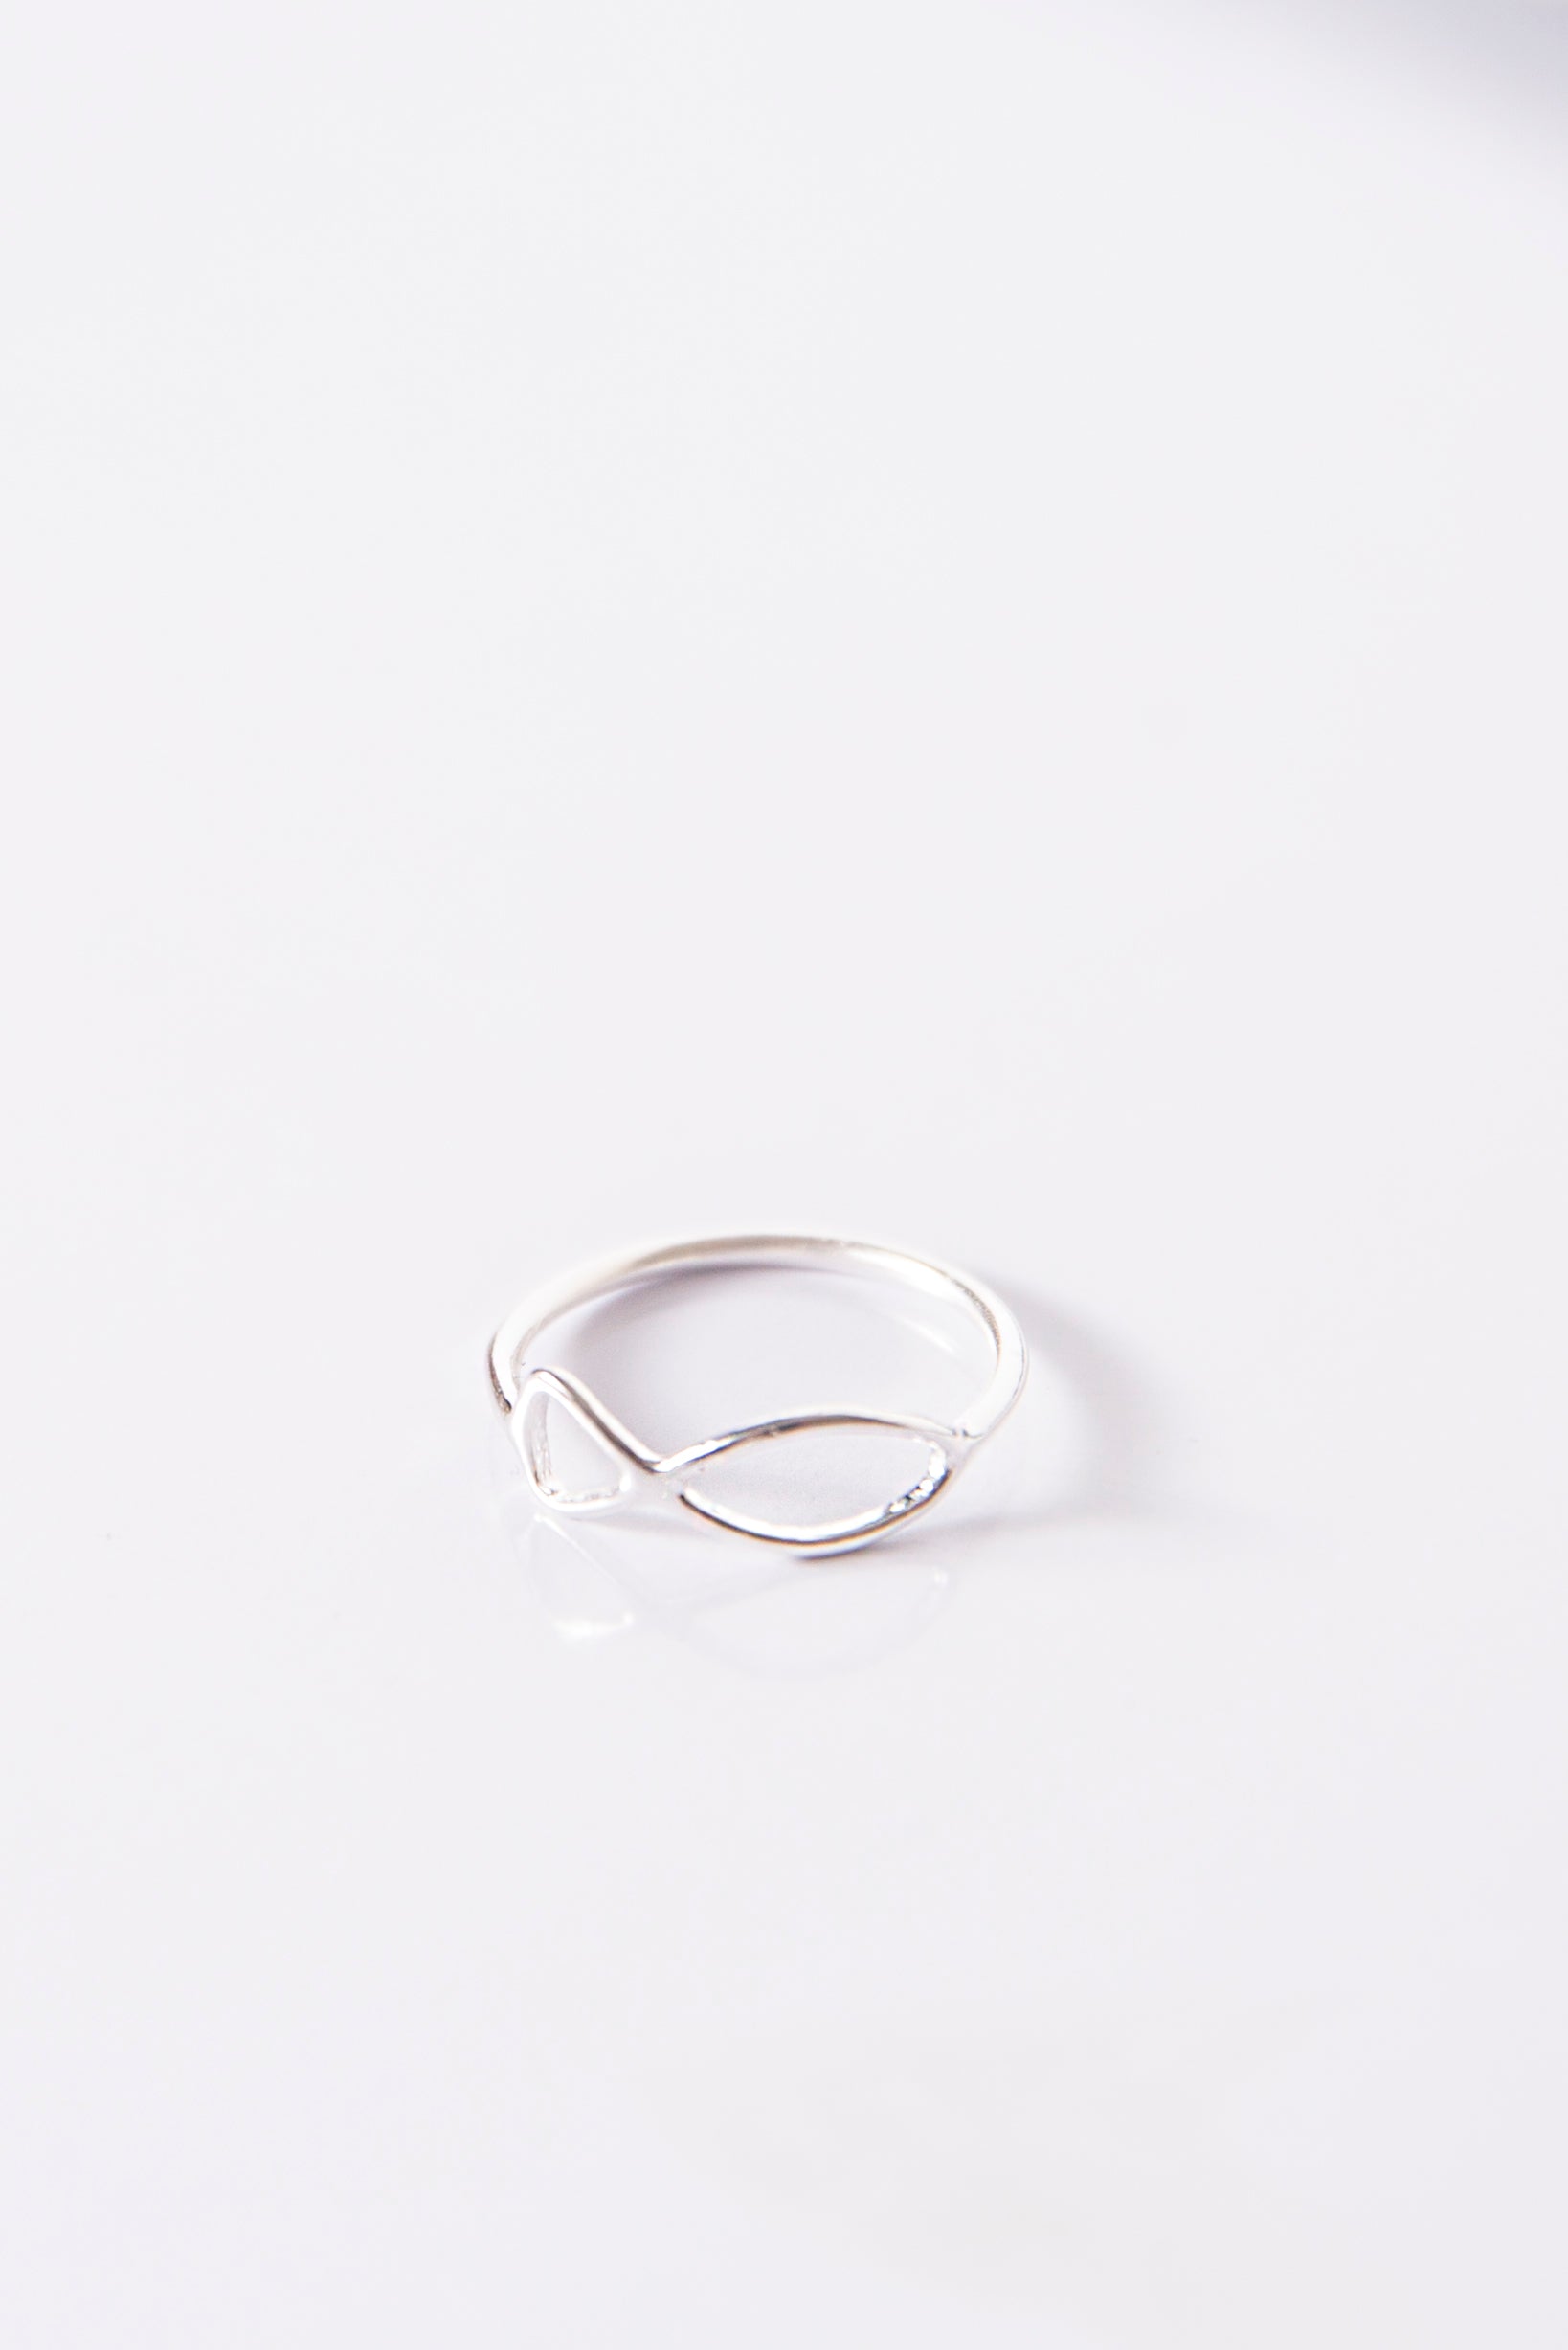 #anello #ring #argento #silver #pesce #simboli #anellisottili #idearegalo #regalodonna #amiche #friendship #gioiello #jewelery